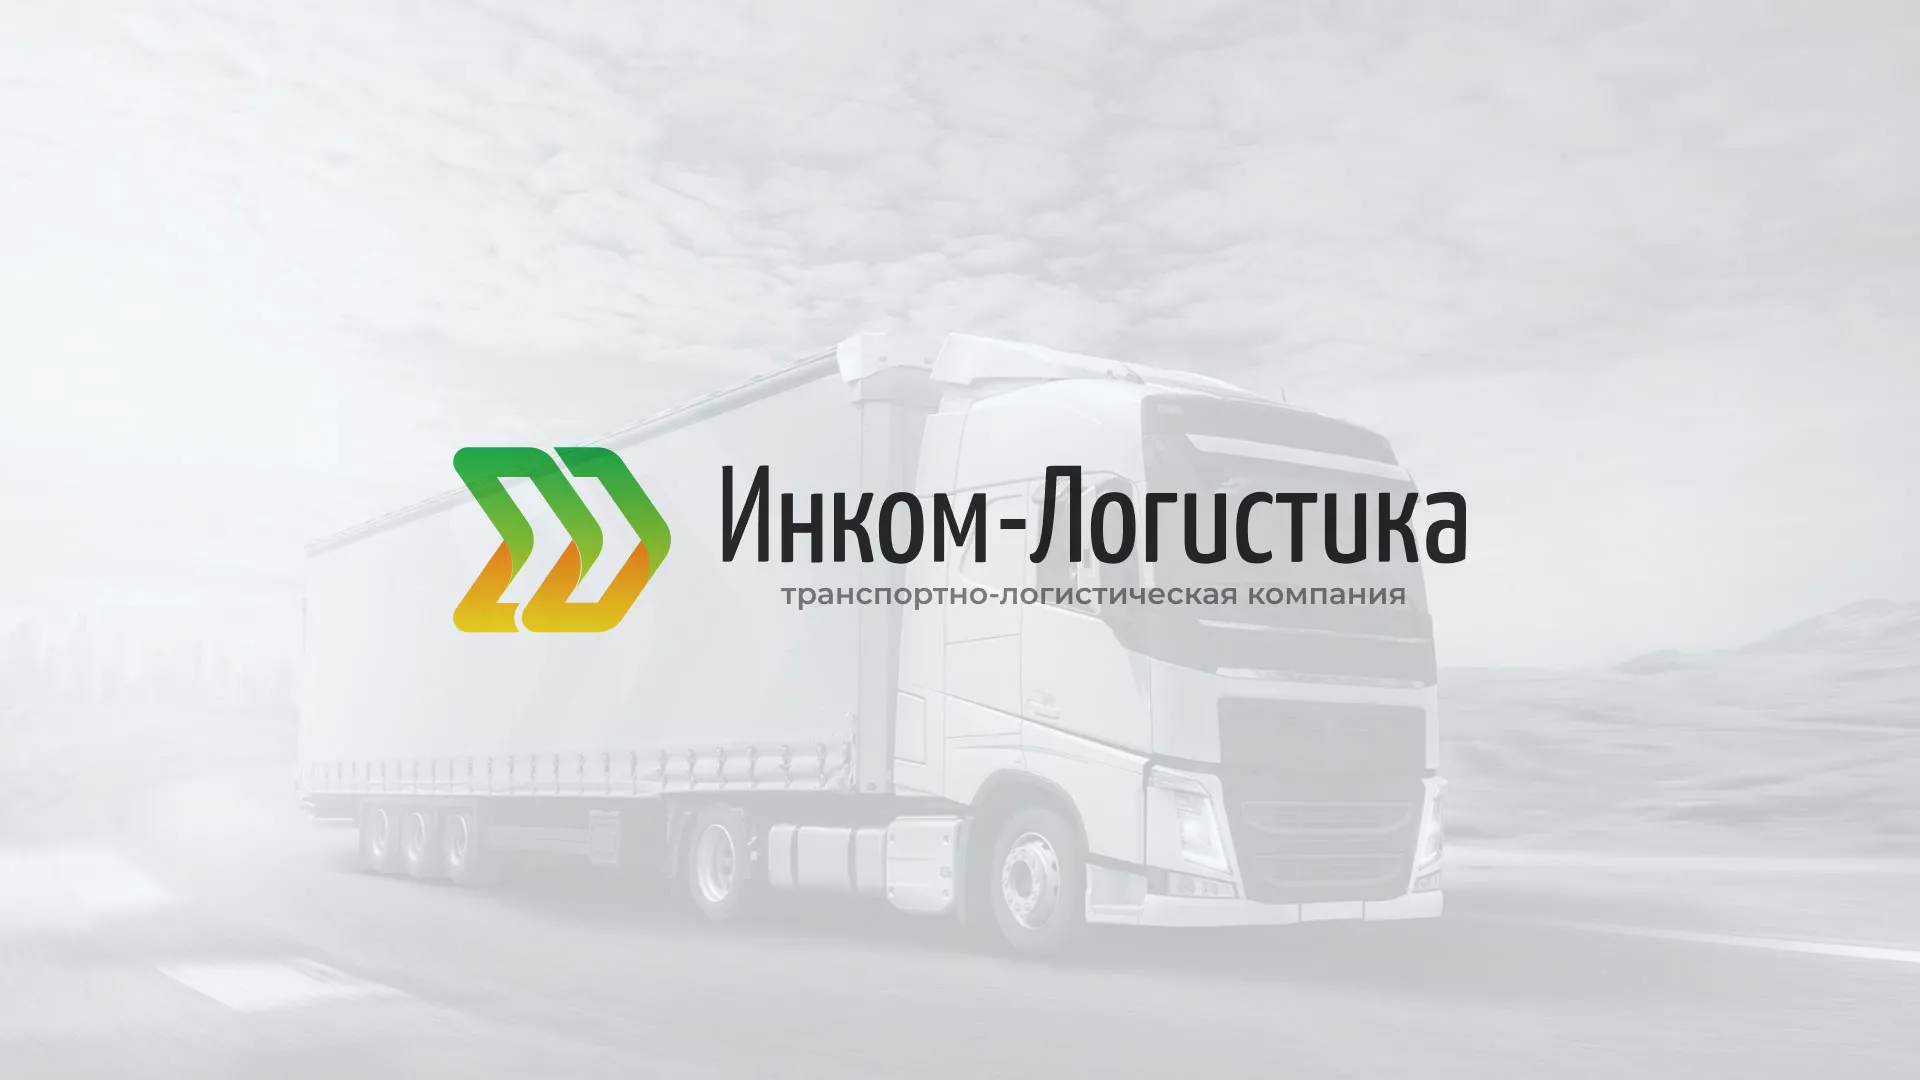 Разработка логотипа и сайта компании «Инком-Логистика» в Пушкино